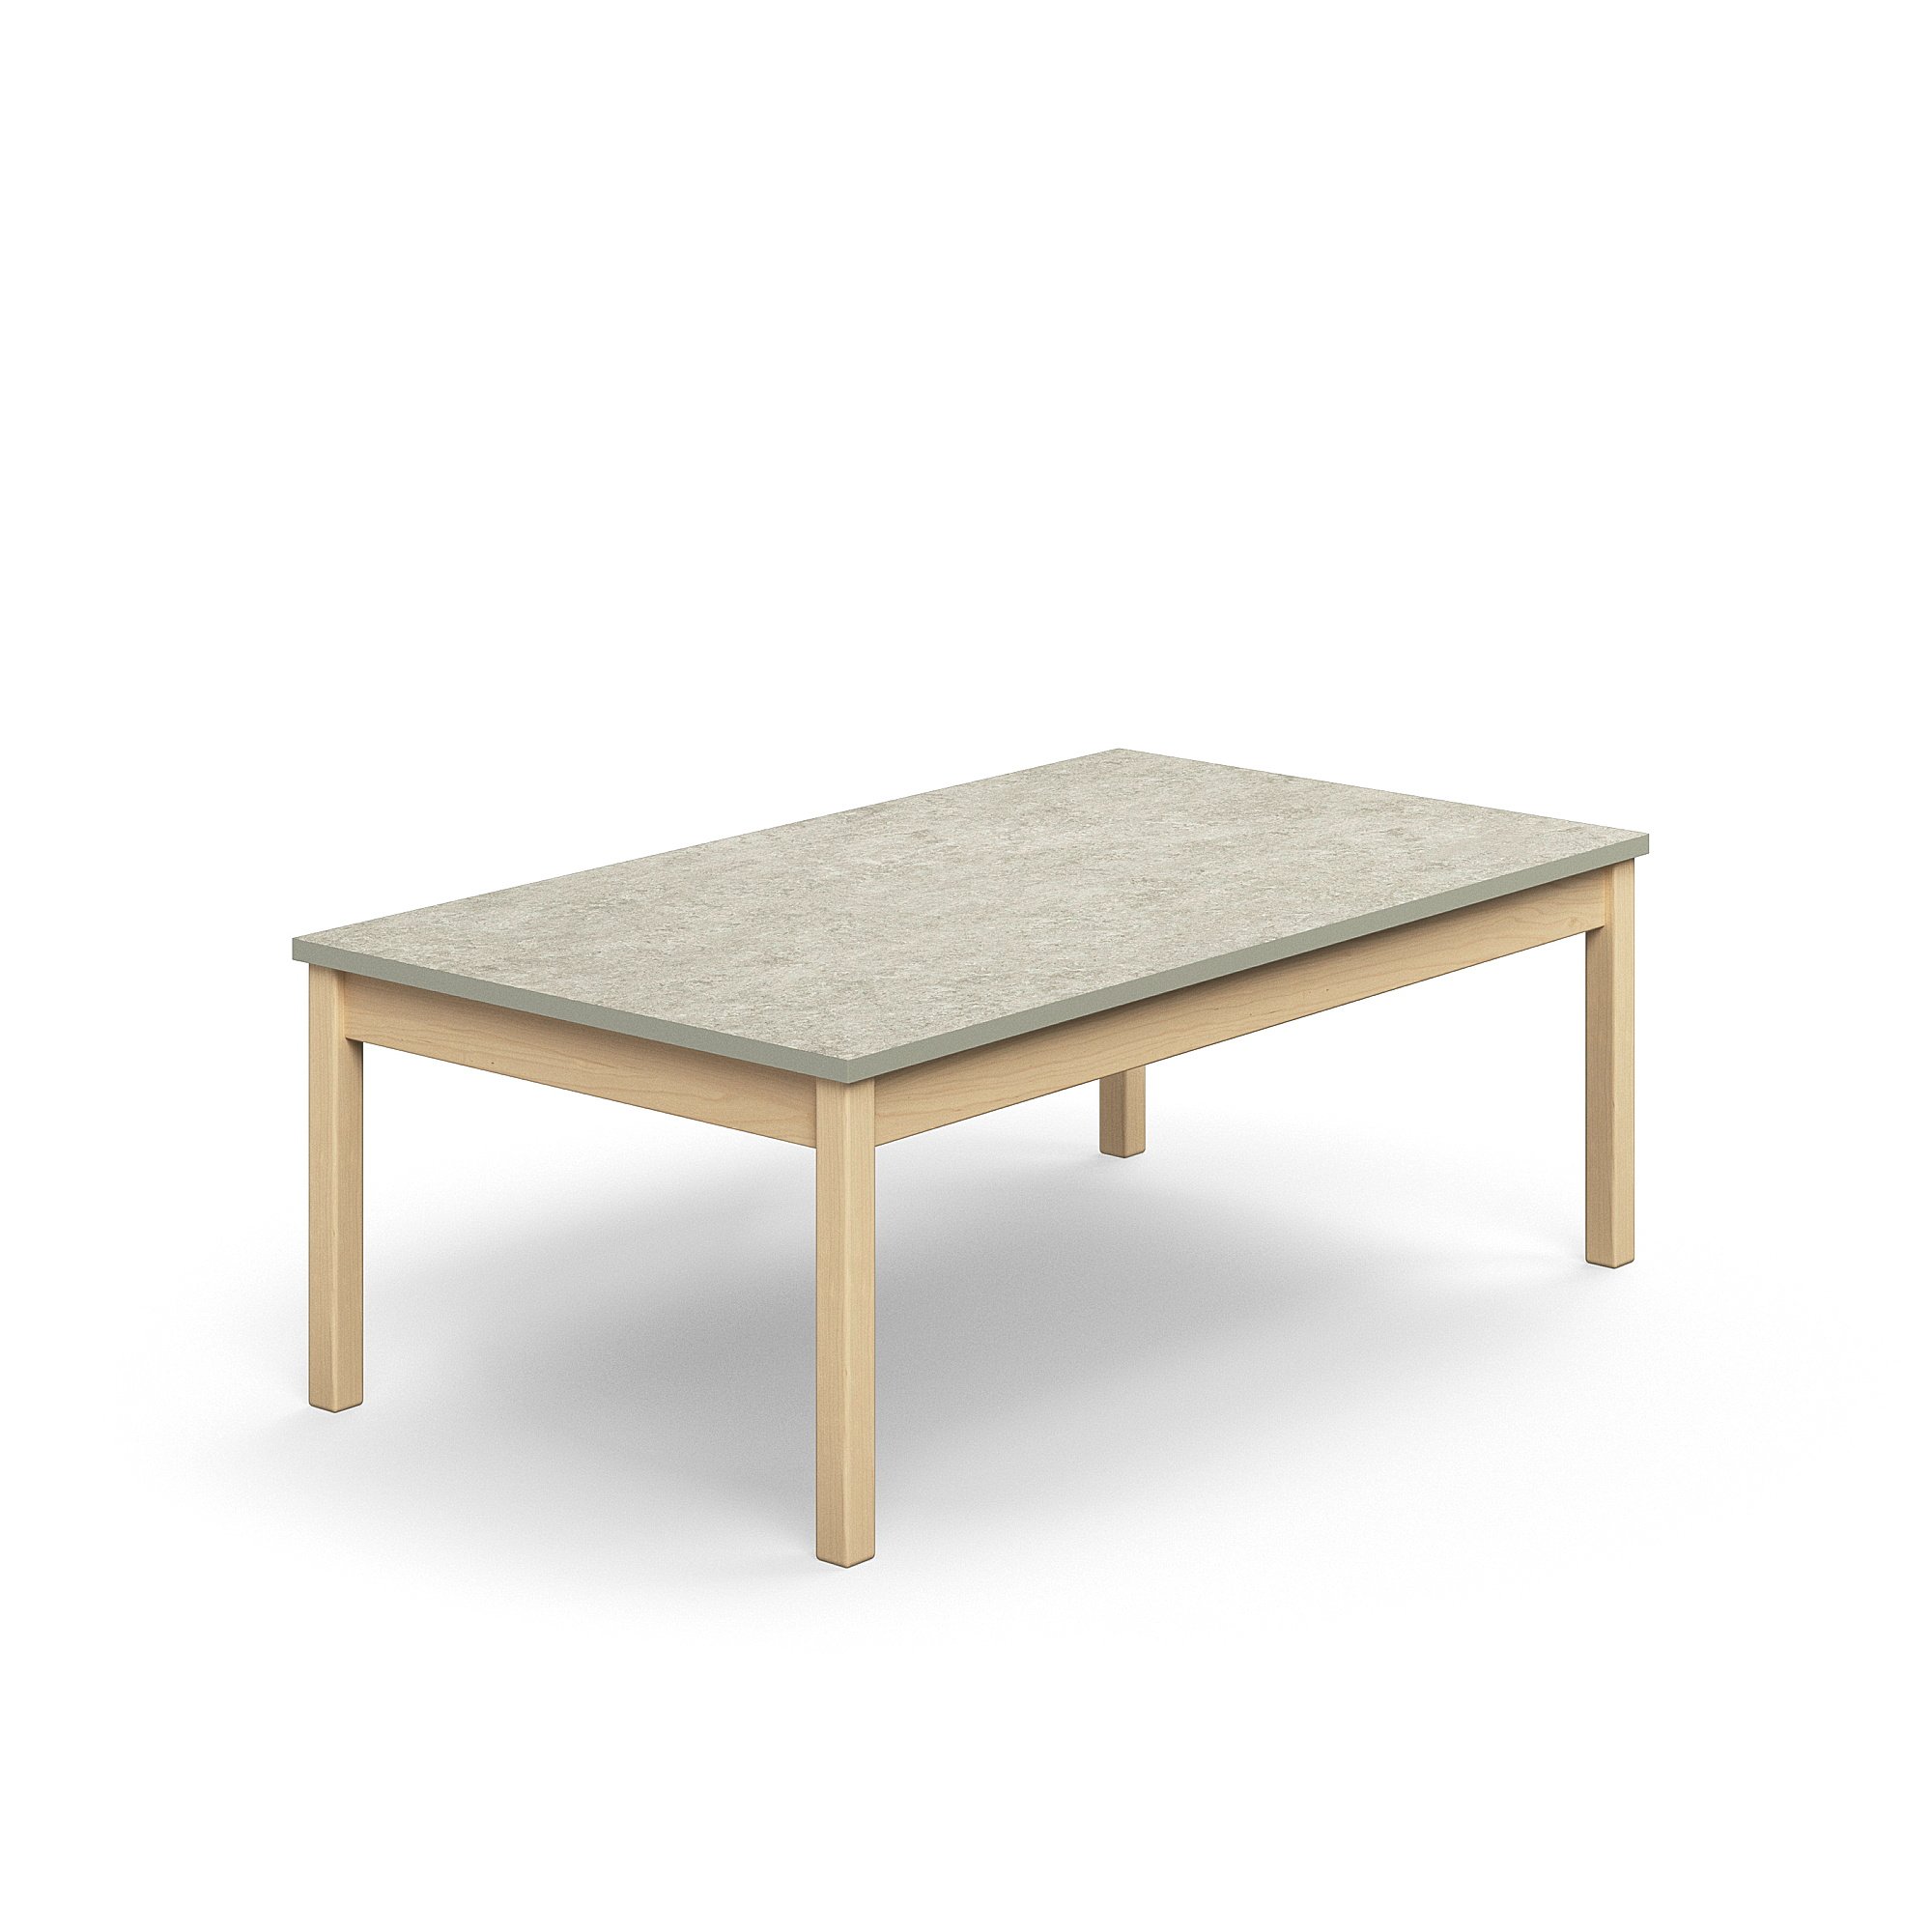 Stůl DECIBEL, 1400x800x530 mm, akustické linoleum, bříza/šedá